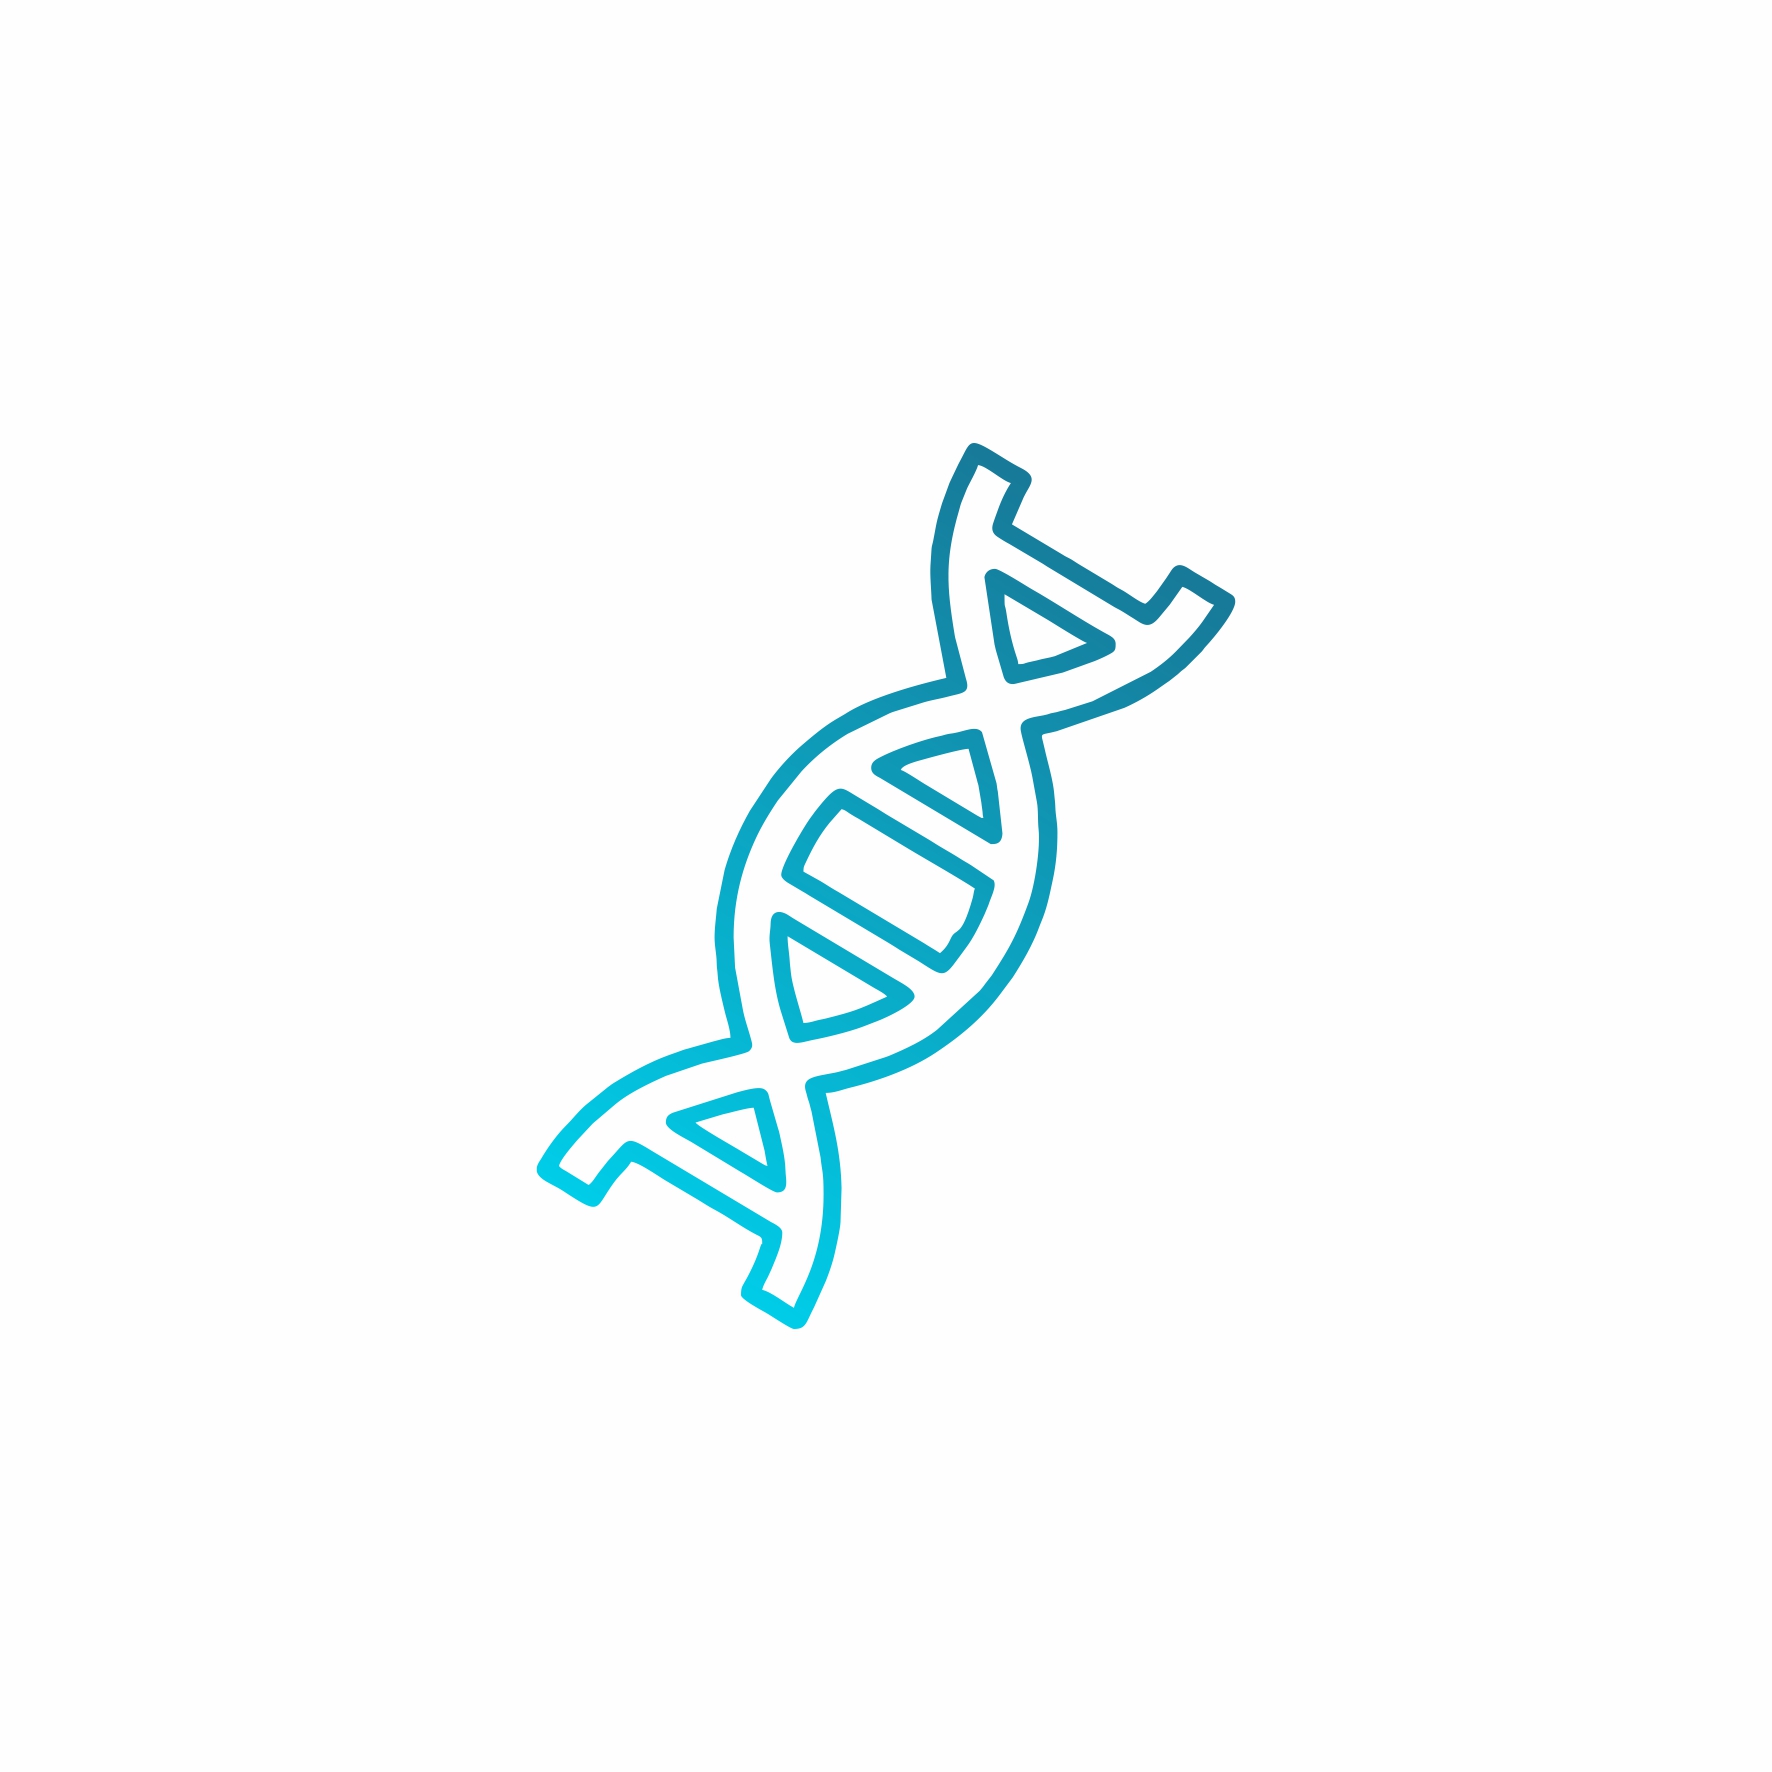 DNA ipinya Series